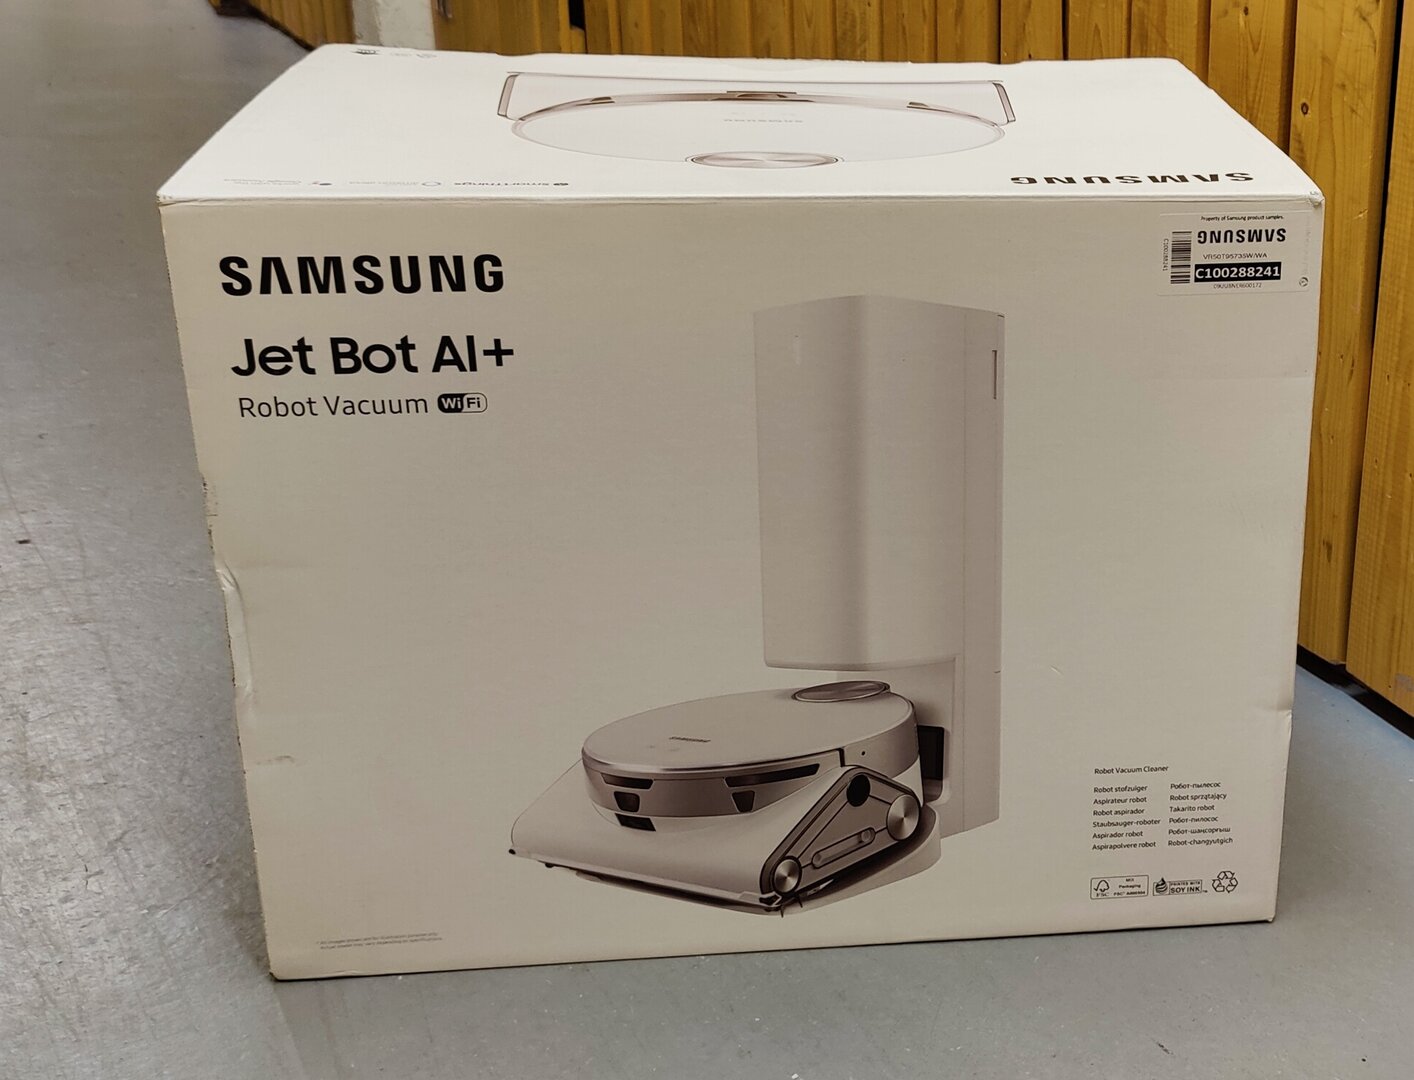 Samsung Jet Bot 90 AI+ - a high-end robot vacuum cleaner AfterDawn